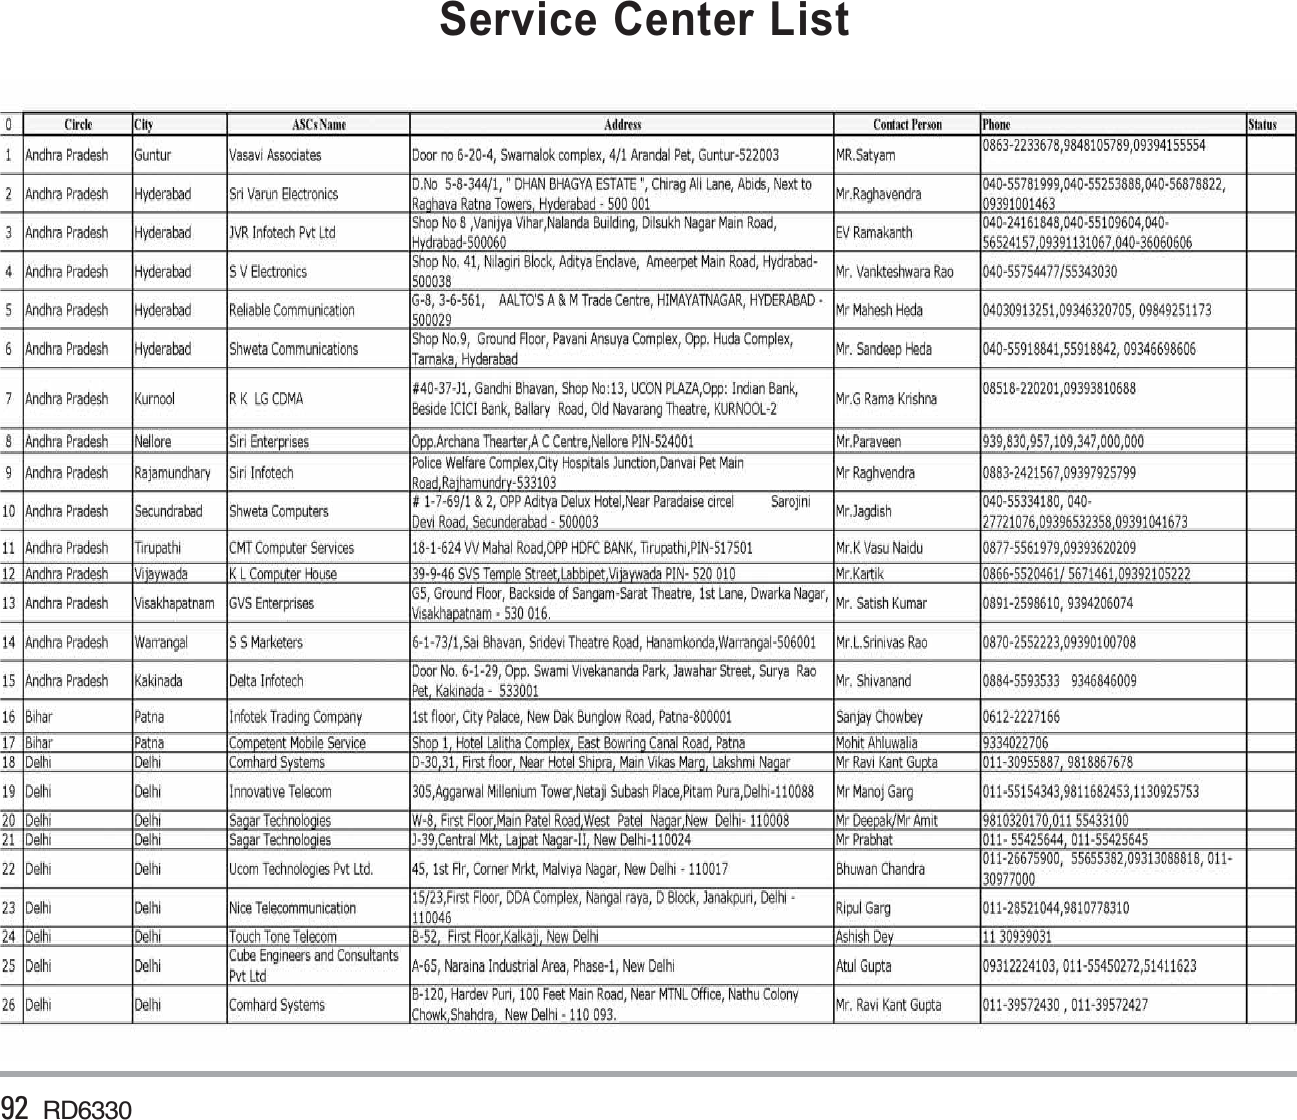 92 RD6330Service Center List